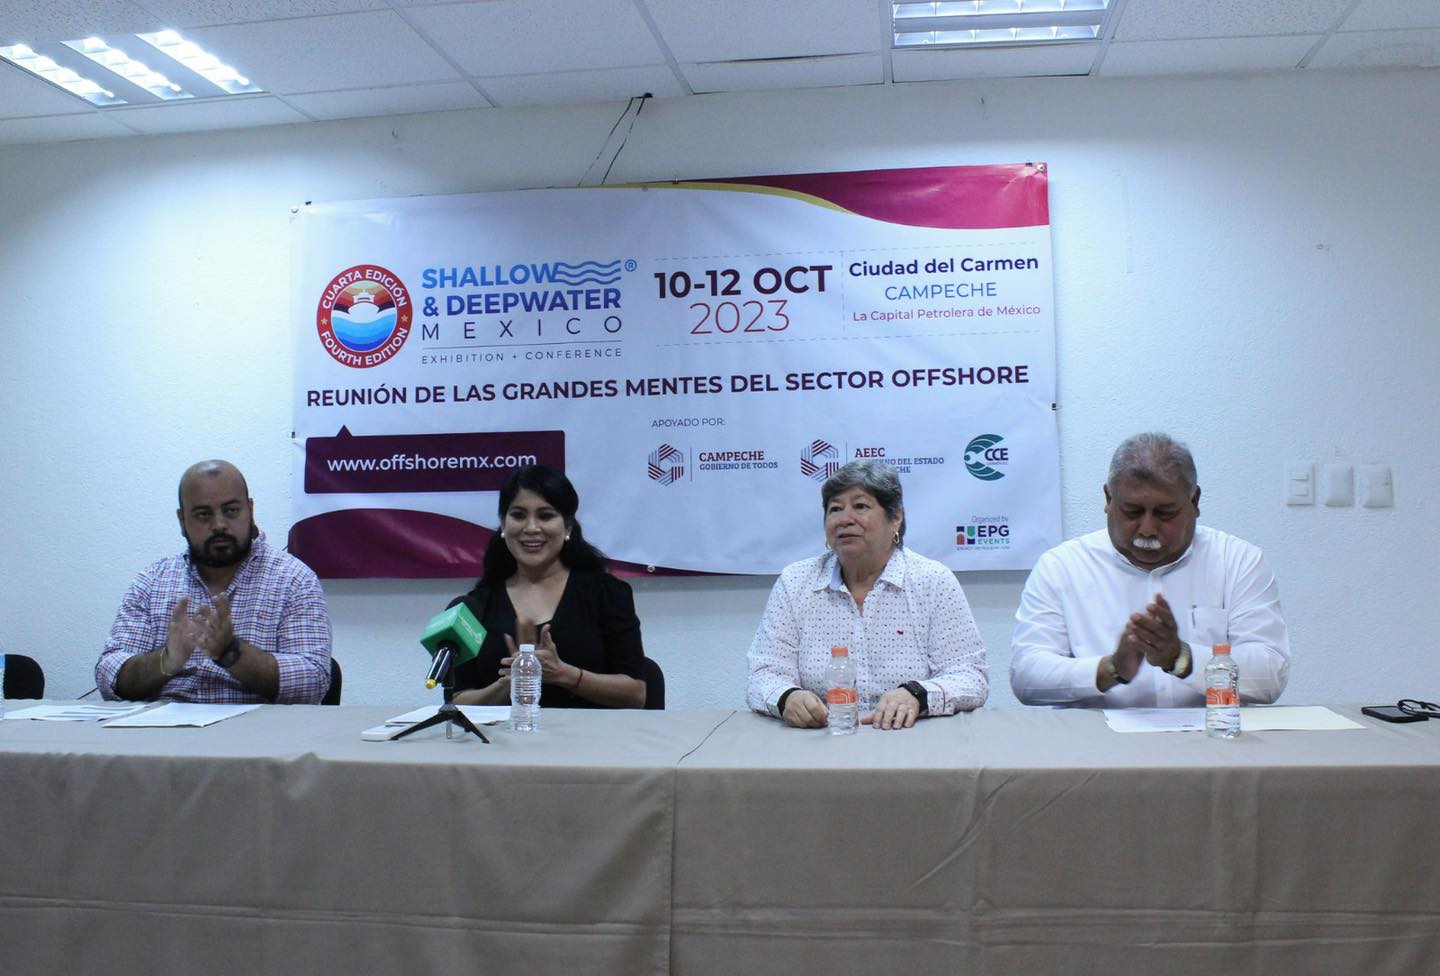 Presidenta de hoteleros de Ciudad del Carmen pide a la organizadora de Shallow and Deepwater Mexico, que se retracte en sus declaraciones